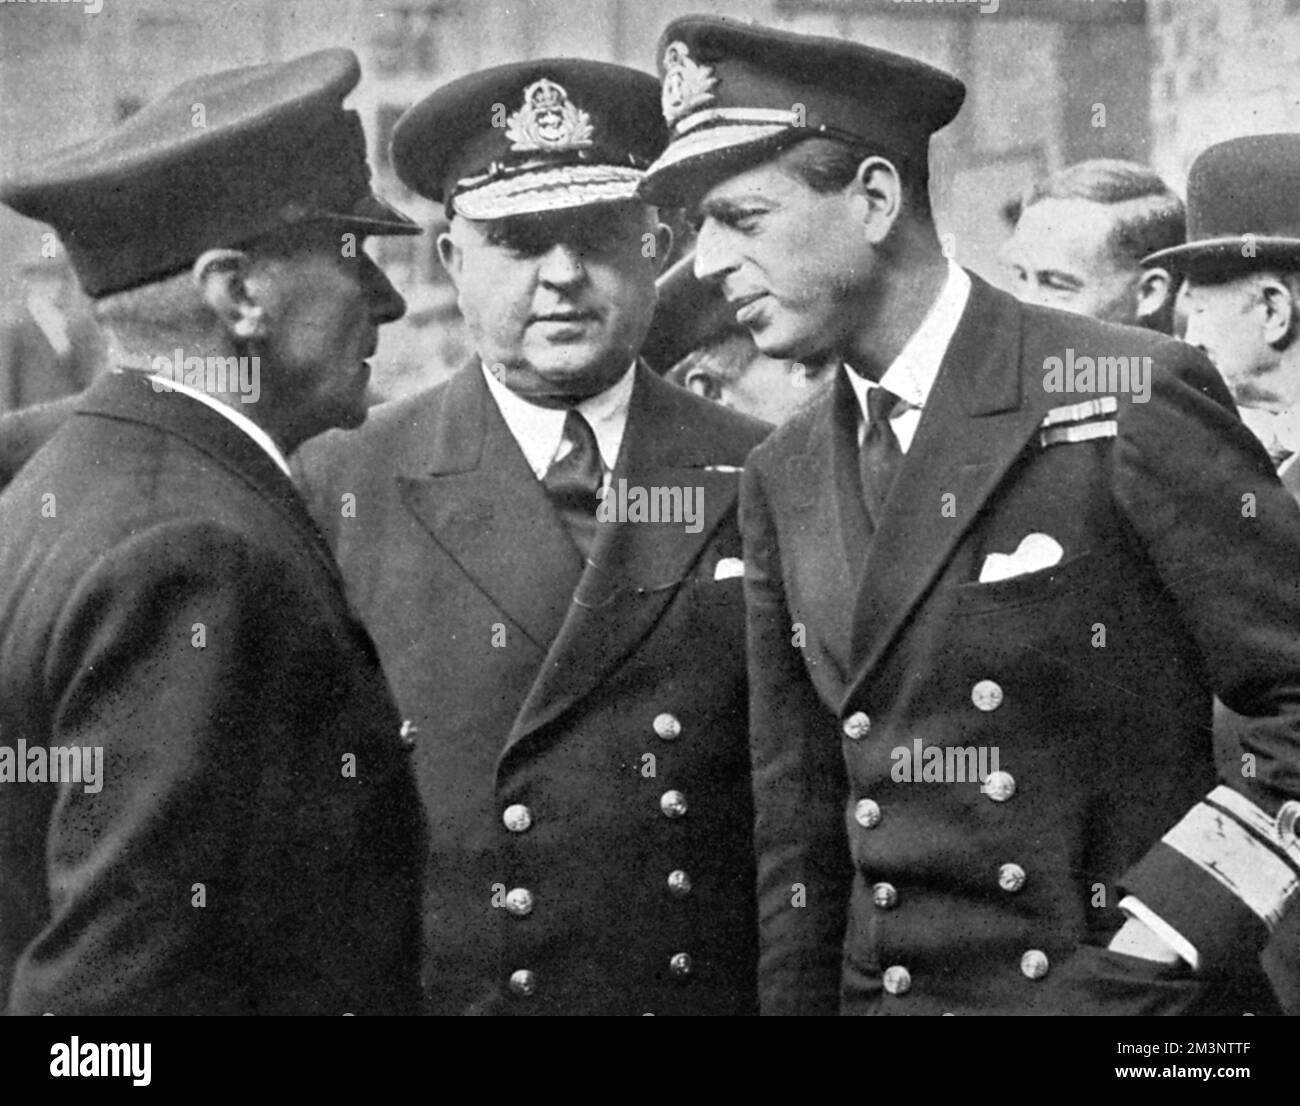 Prinz George, Herzog von Kent (1900 - 1940), auf einer Führung durch Marineschiffbauten im Norden während des Zweiten Weltkriegs. Hier ist ein Gespräch mit einem der Beamten zu sehen, die während seiner Tour getroffen wurden, wobei Konteradmiral Wellwood Maxwell anwesend war. Datum: 1939 Stockfoto